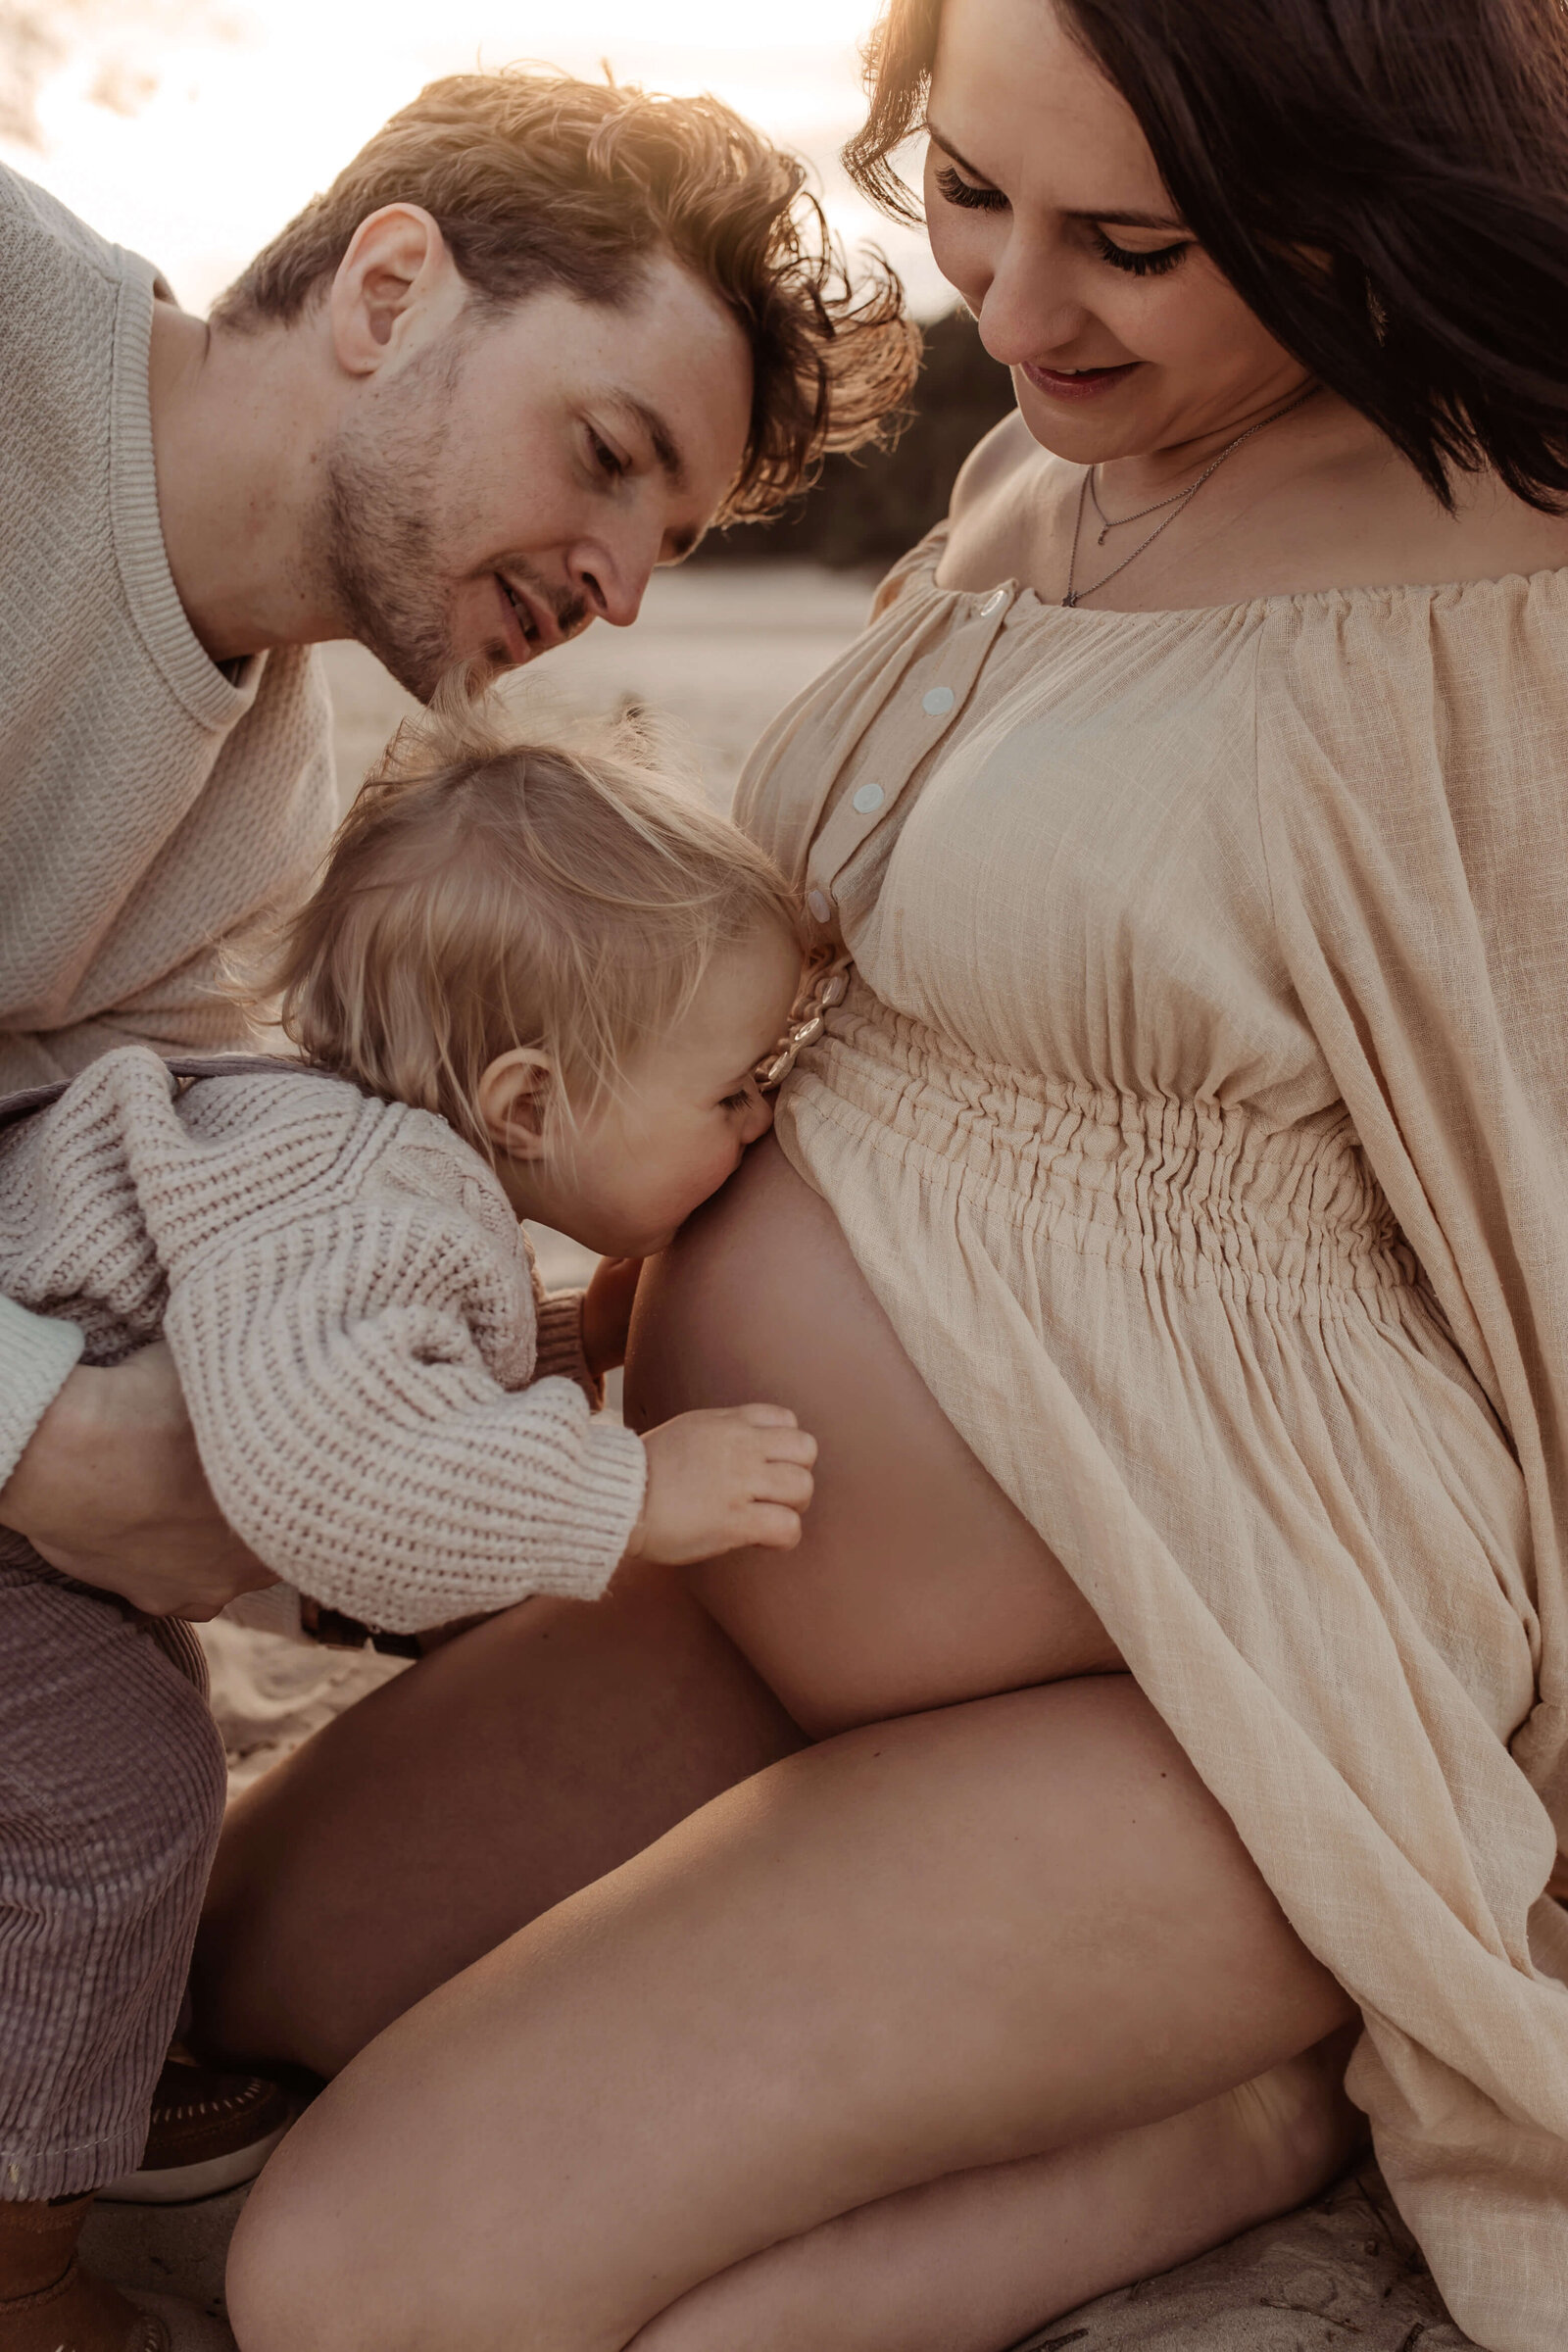 Zwangerschap Fotograaf groningen, Luxshots, bollebuik fotografie